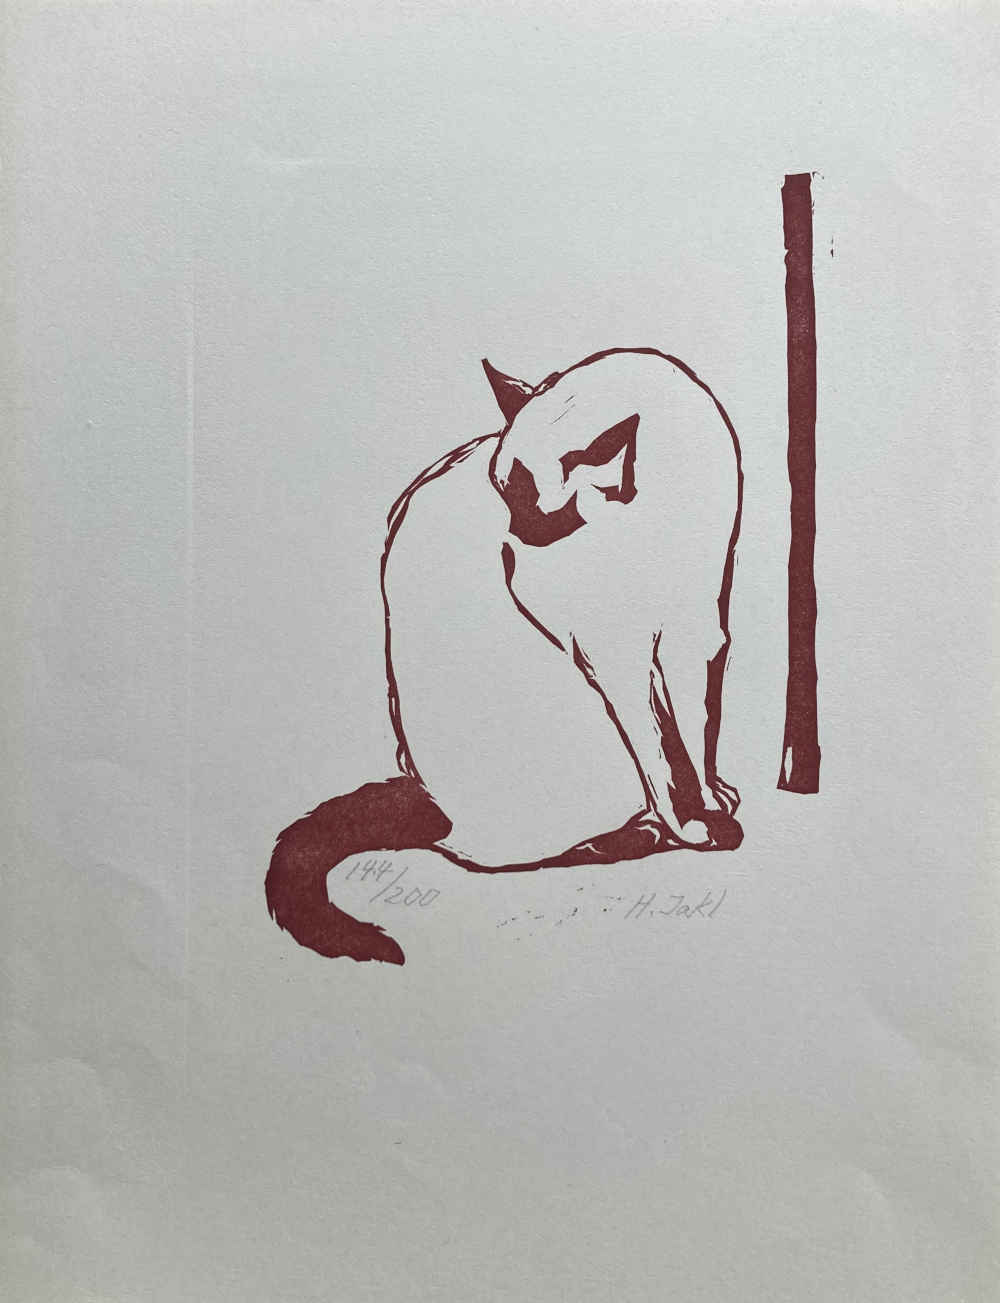 Kunst Bilder kaufen; hier: Linolschnitt mit Katze von Hermann Jakl.